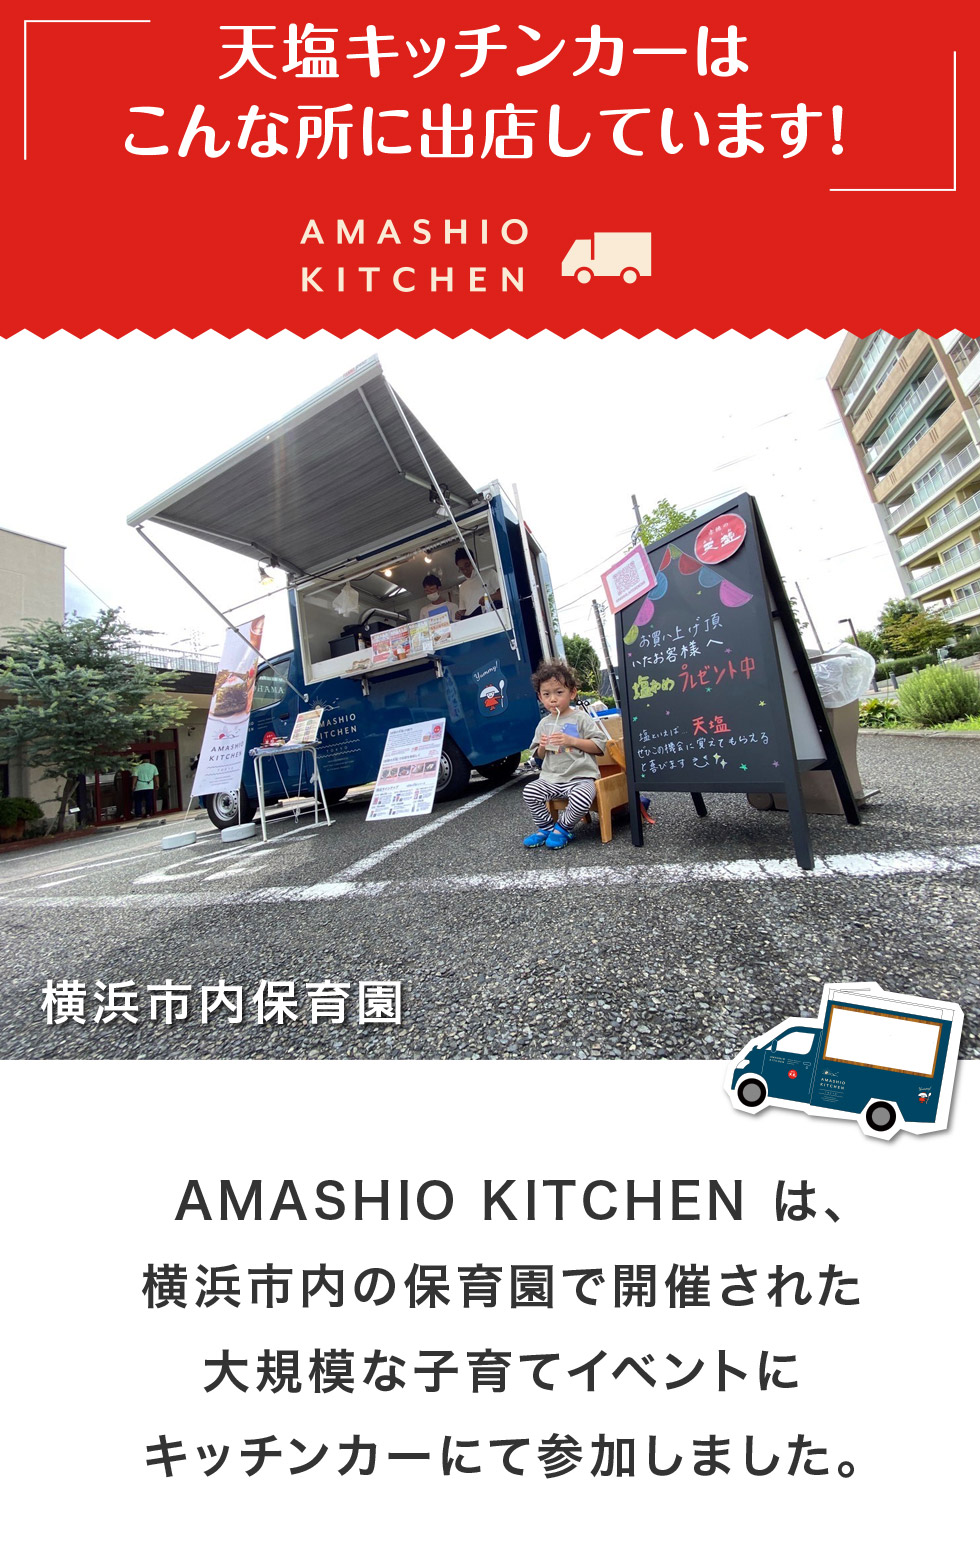 天塩キッチンカーは
こんな所に出店しています！AMASHIO KITCHEN は、横浜市内の保育園で開催された大規模な子育てイベントにキッチンカーにて参加しました。